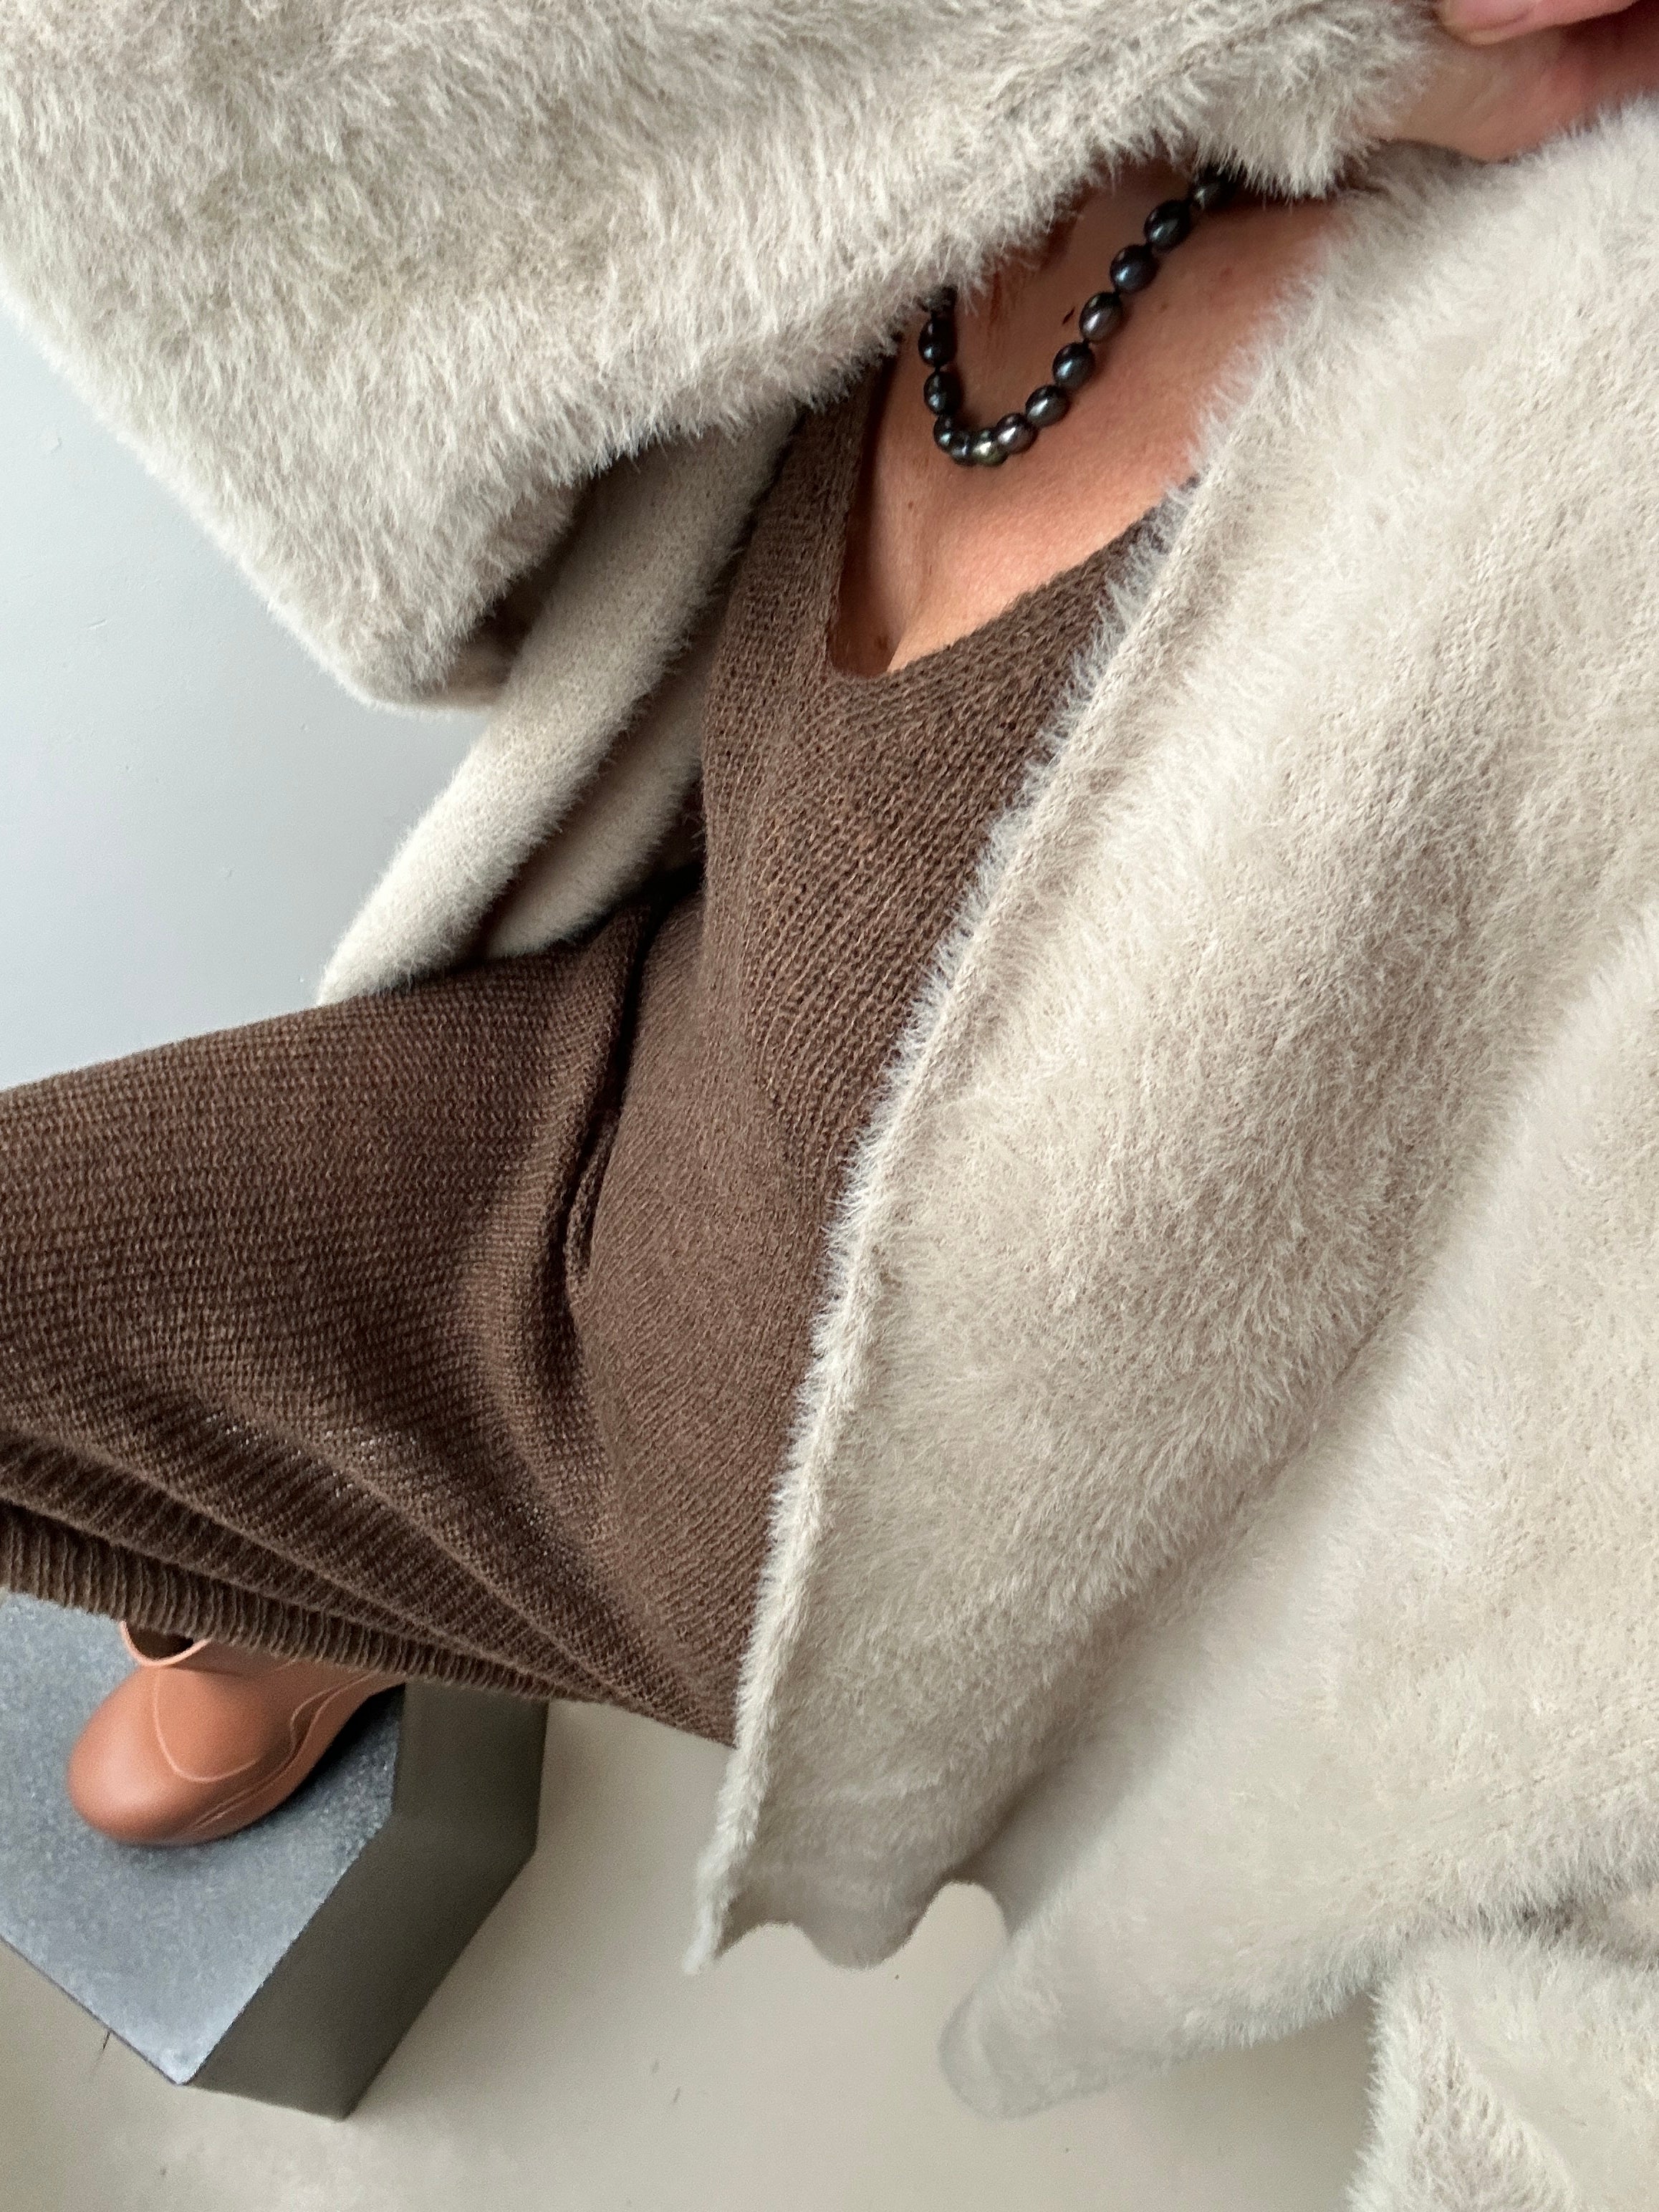 Future Nomads Cardigans One Size Long Knit Coat Cardigan Beige